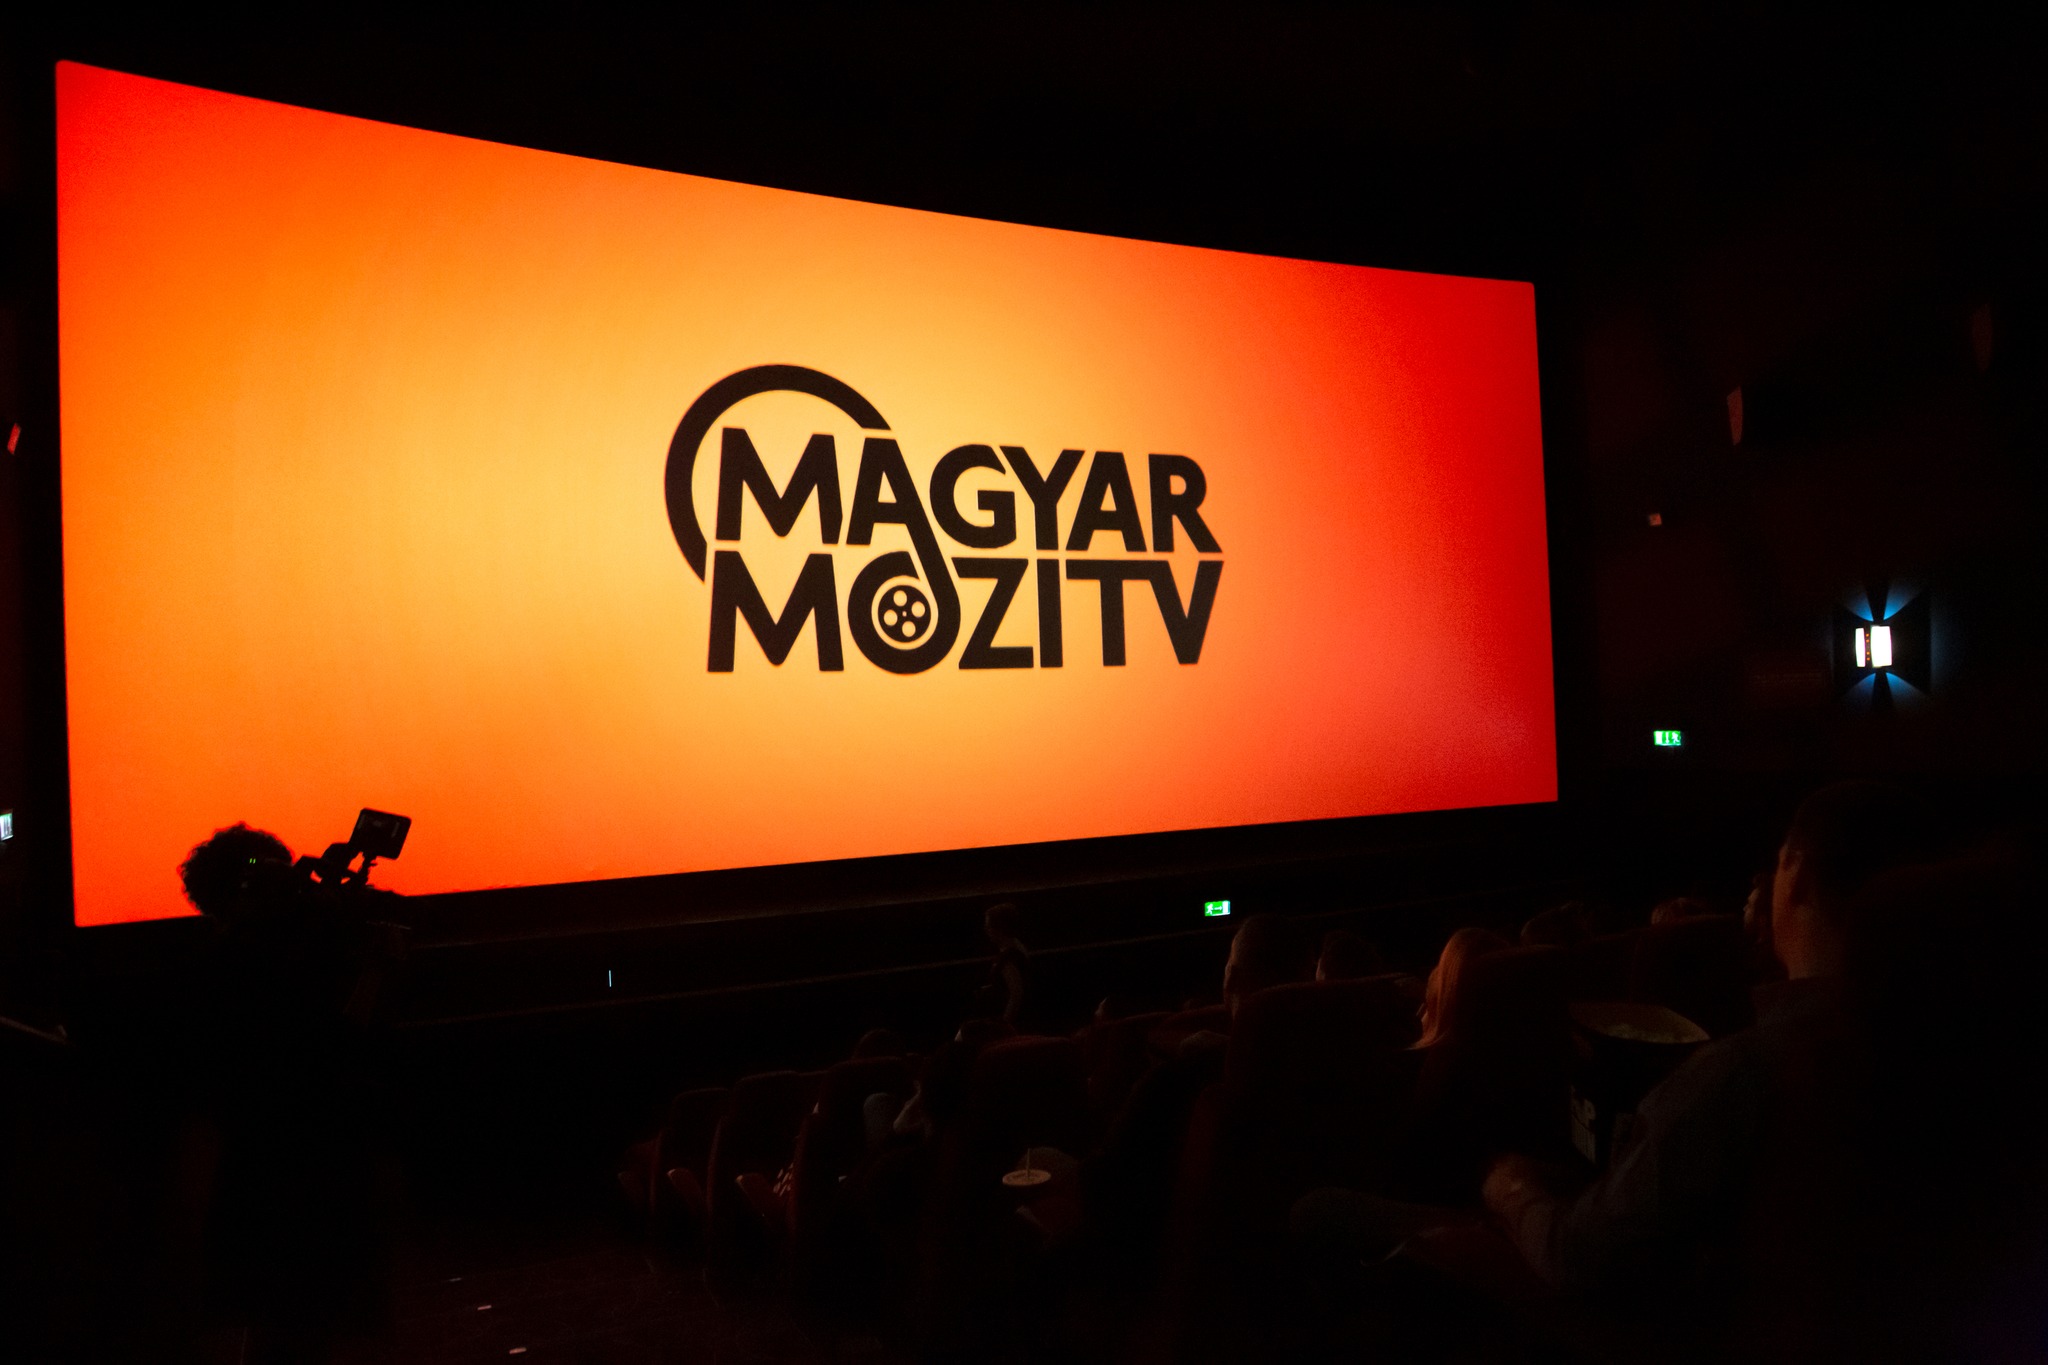 البرنامج التلفزيوني الهنغاري الجديد Magyar Mozi